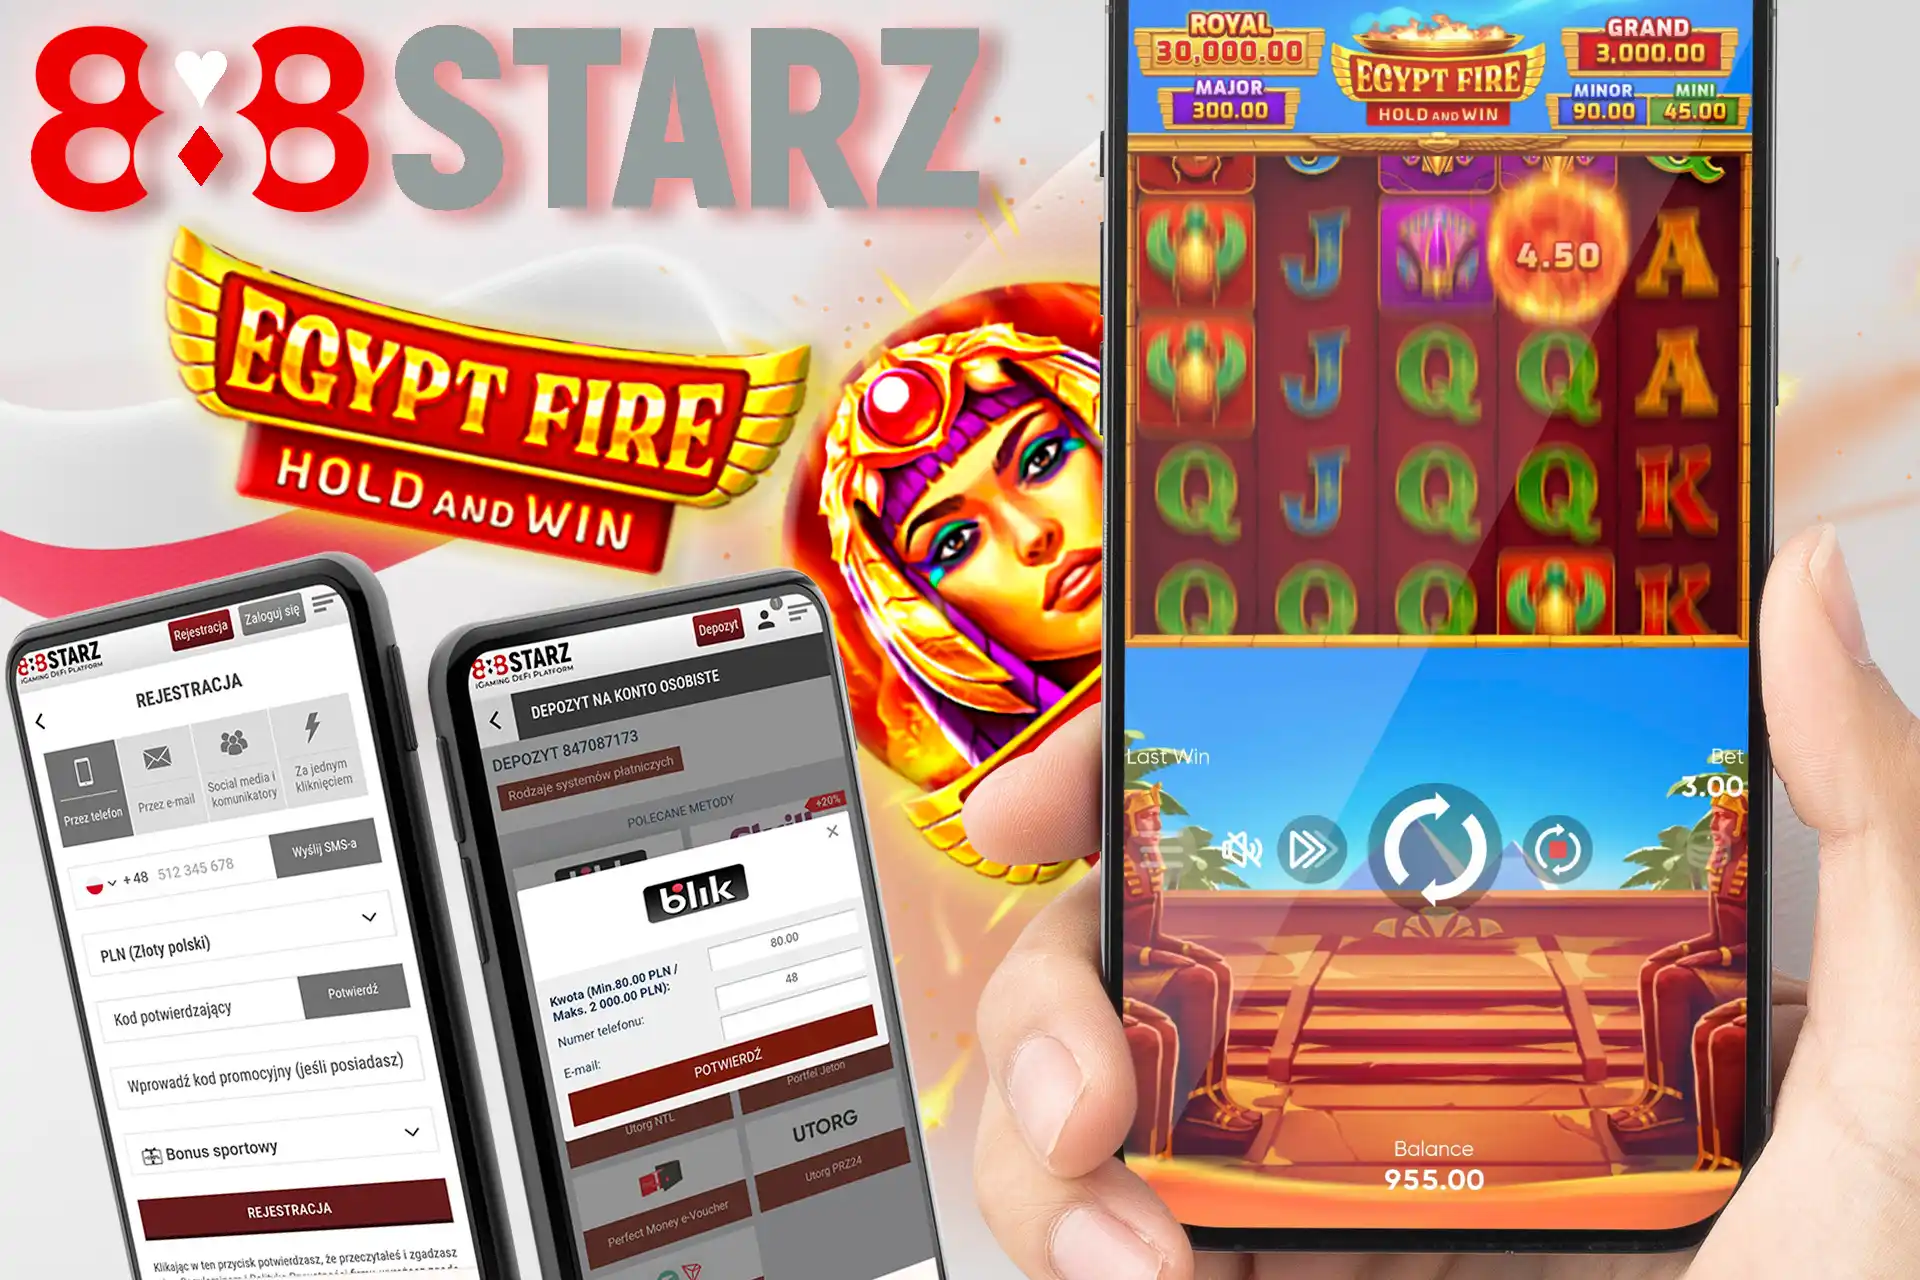 Zarejestruj się, złóż swój pierwszy depozyt i zacznij grać w Egypt Fire: Hold and Win na 888starz